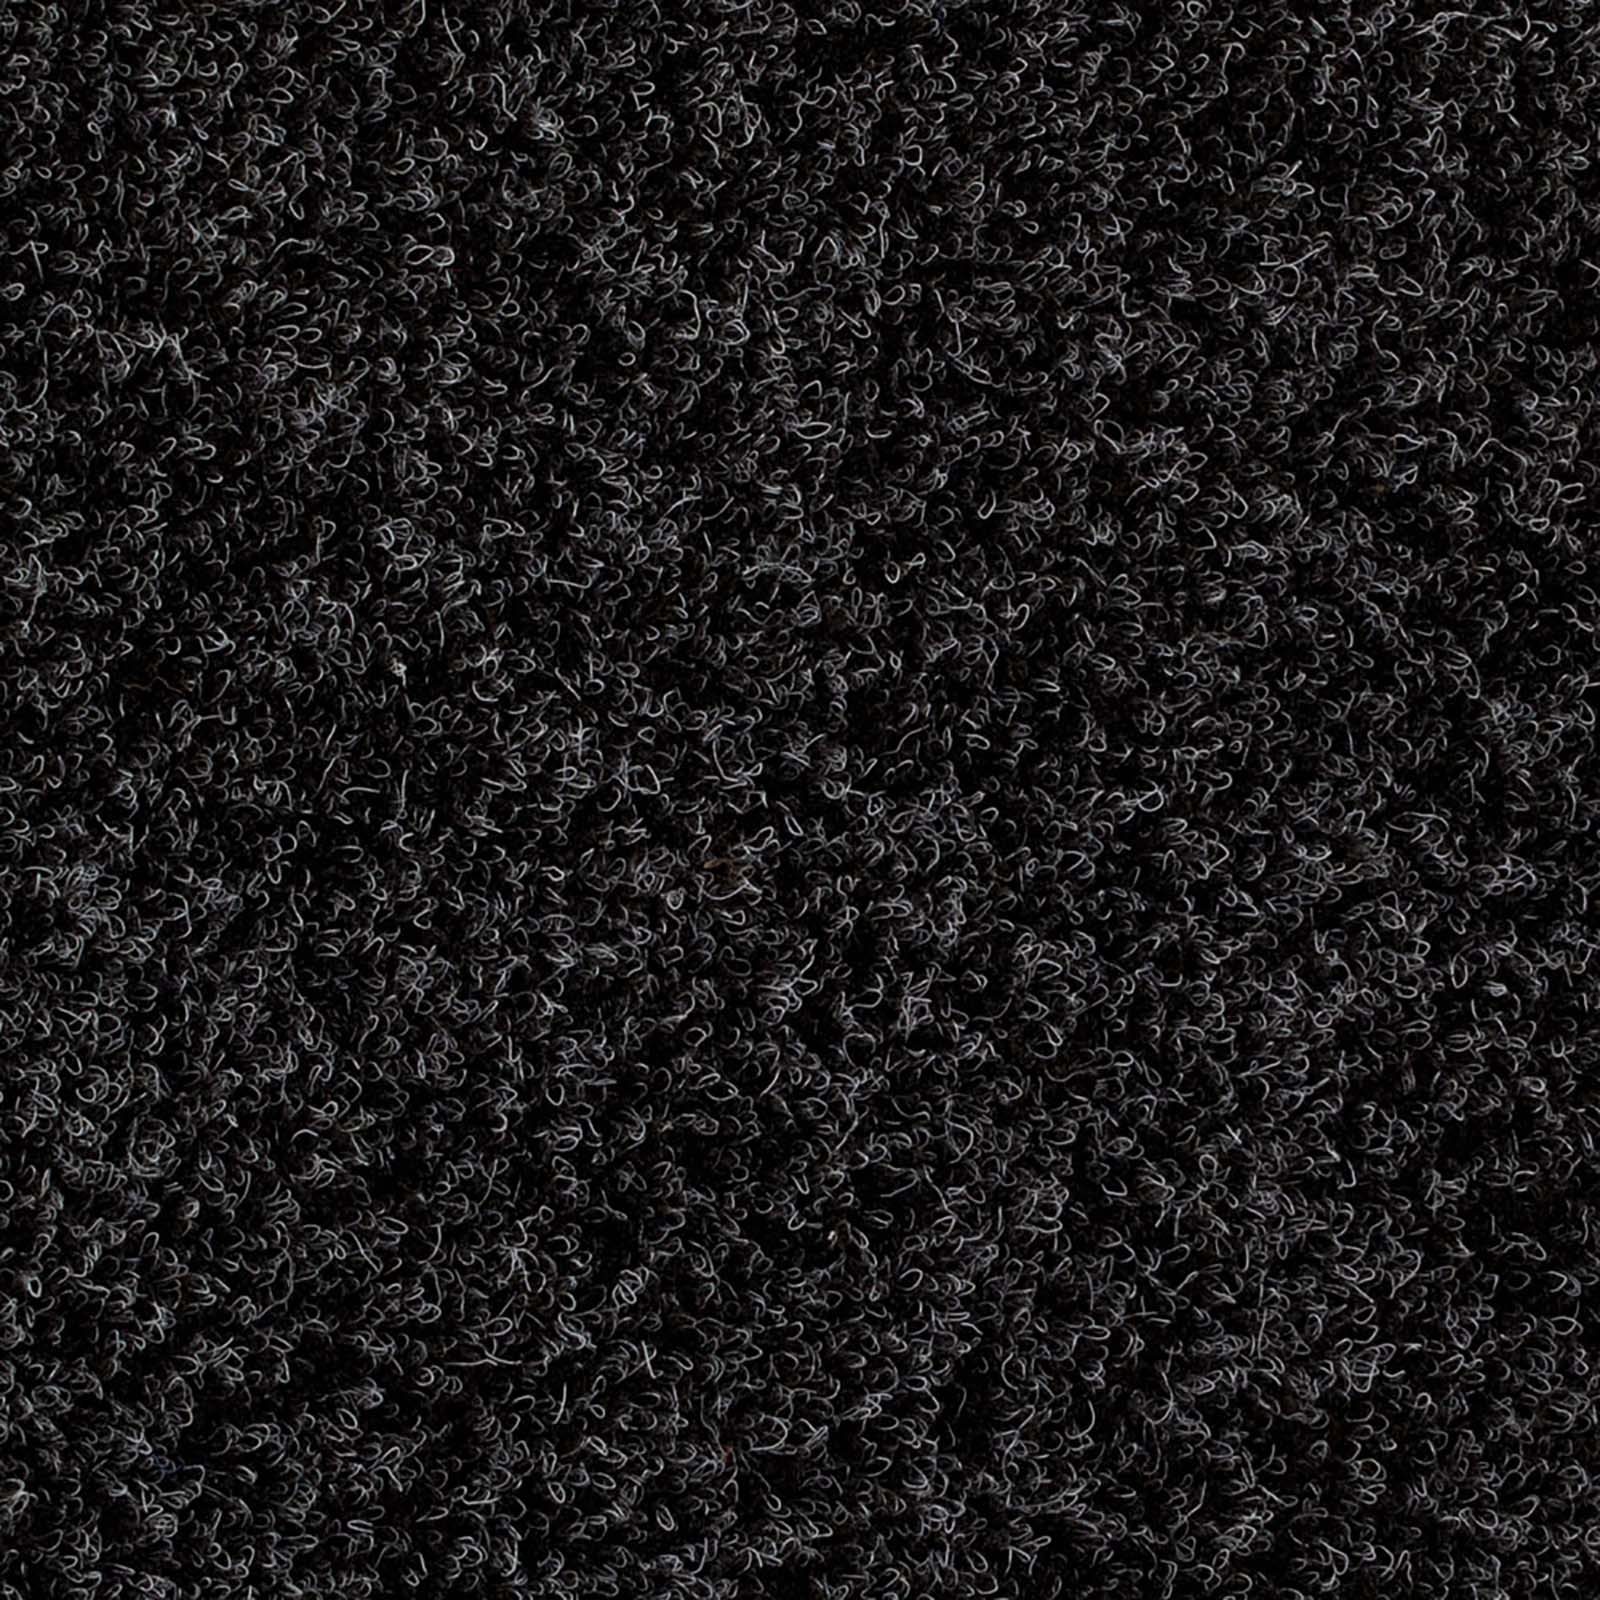 Anthracite Outdoor Carpet - Far